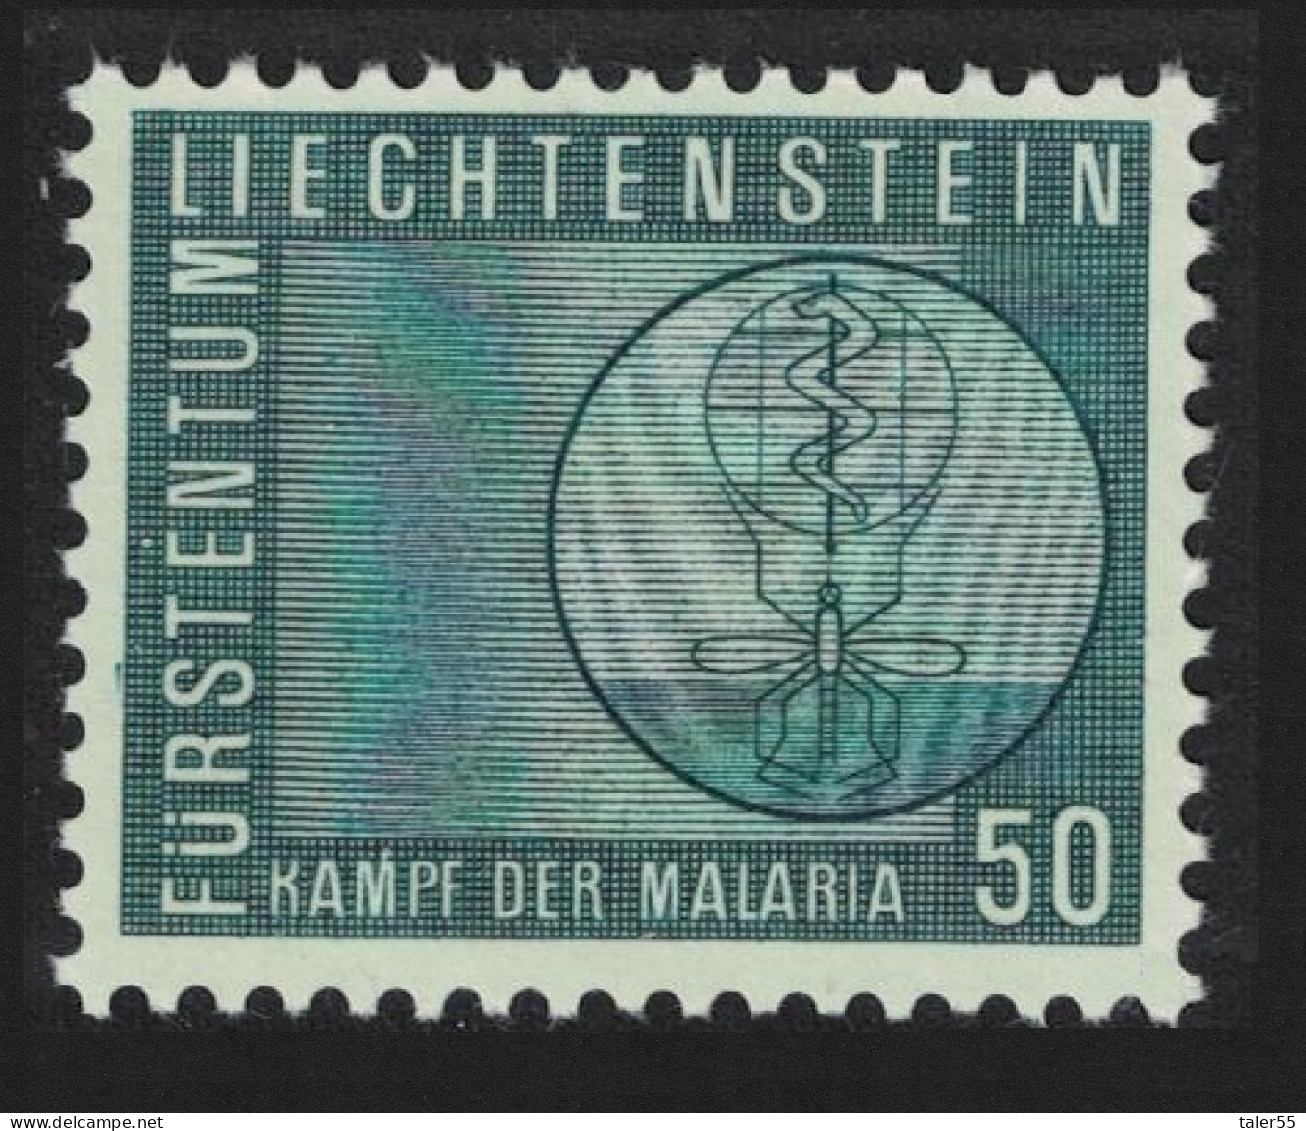 Liechtenstein Malaria Eradication 1962 MNH SG#414 - Nuevos